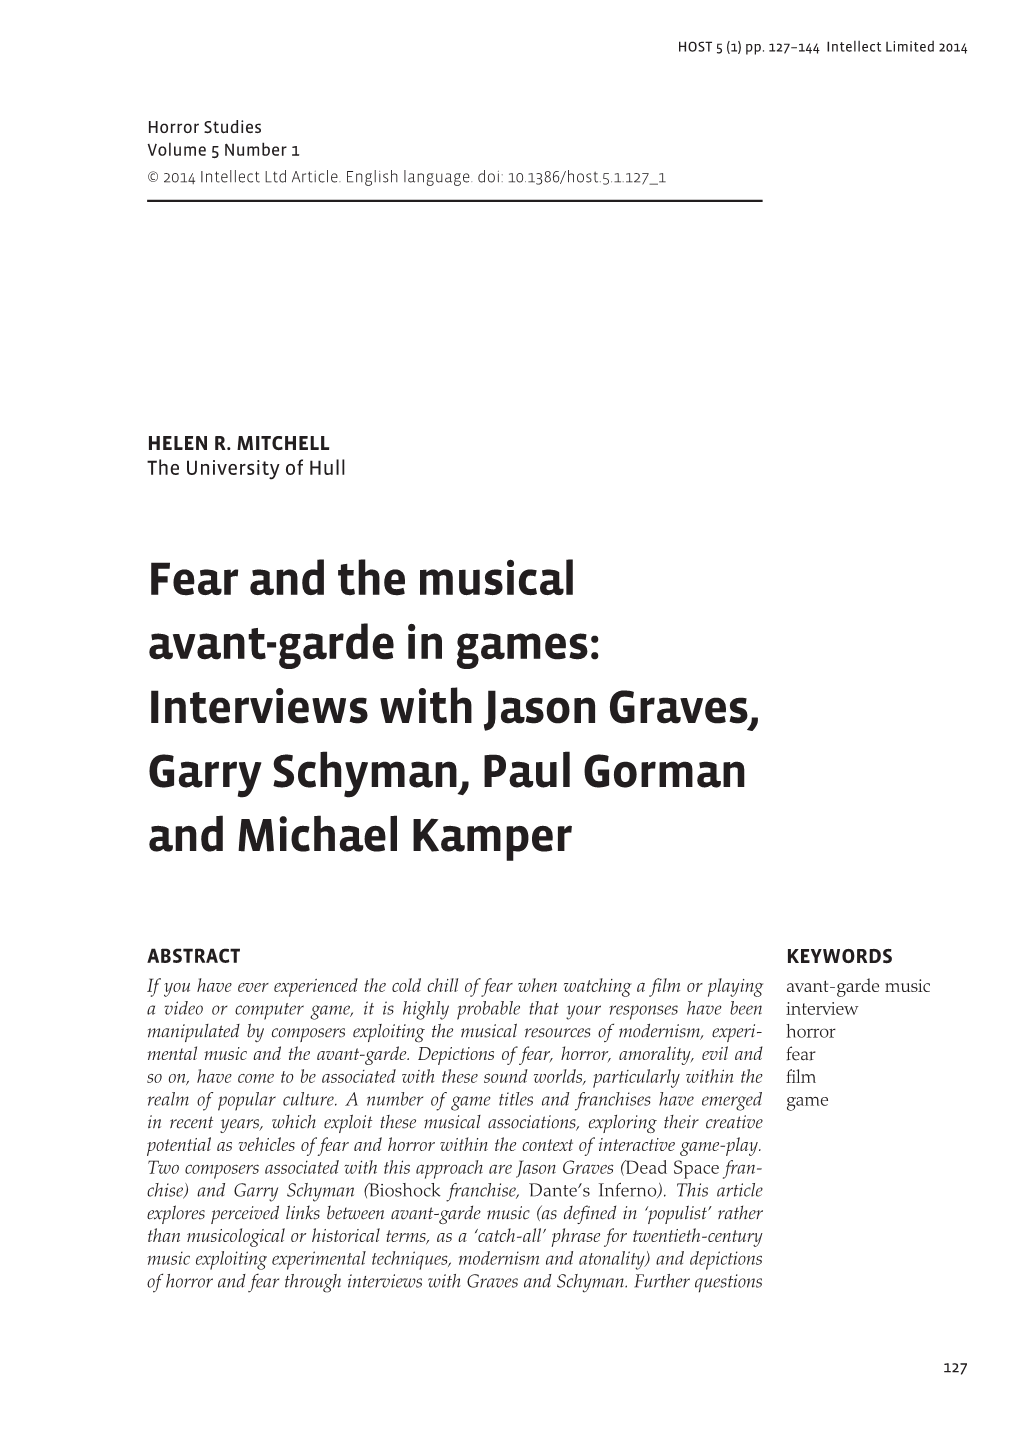 Interviews with Jason Graves, Garry Schyman, Paul Gorman and Michael Kamper